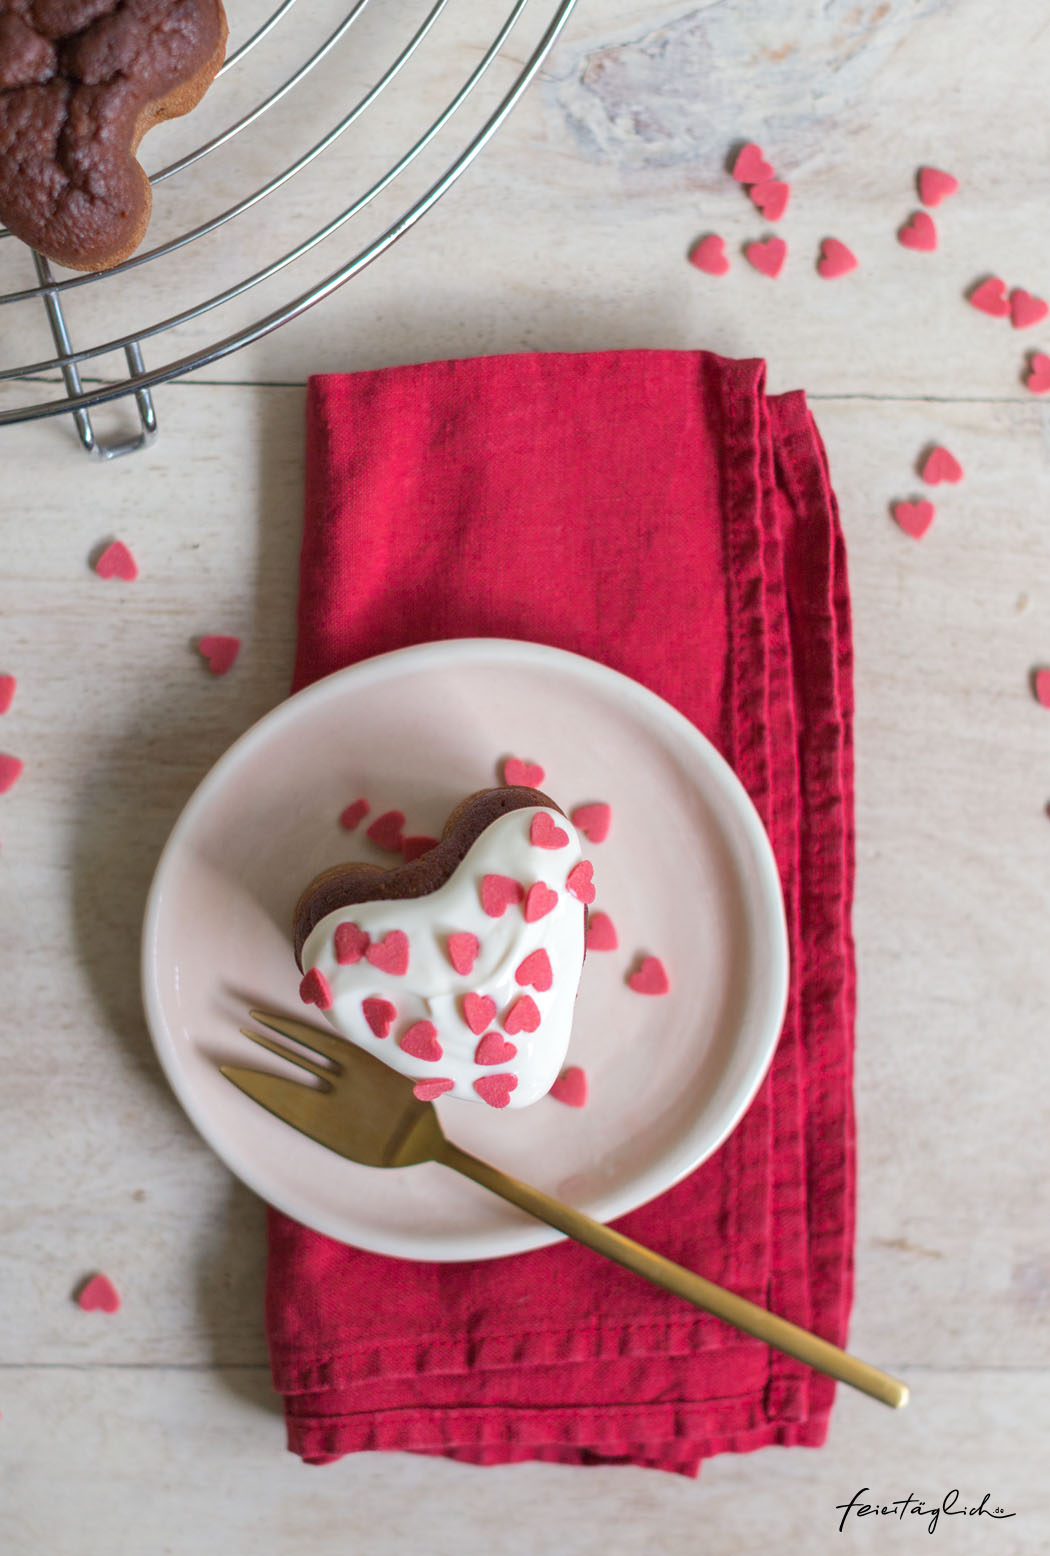 Rezept für Red Velvet Cupcakes mit einer besonderen, gesunden Geheimzutat zum Valentinstag oder Muttertag, vollwertig, gebacken ohne künstliche Farbstoffe